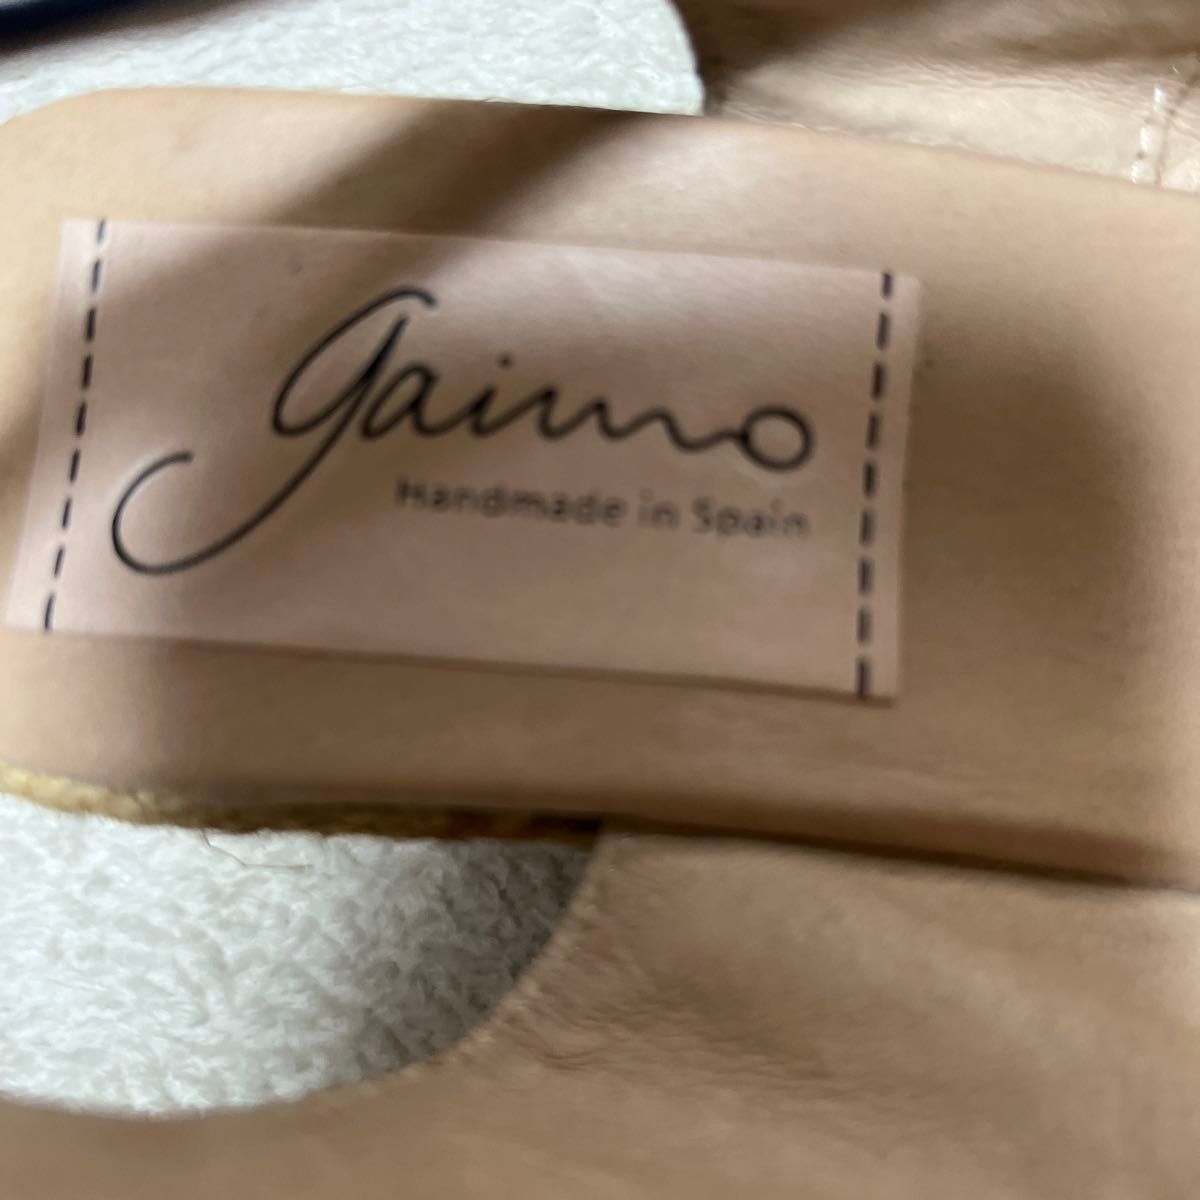 gaimo ガイモ サンダル  Hand made in Spain